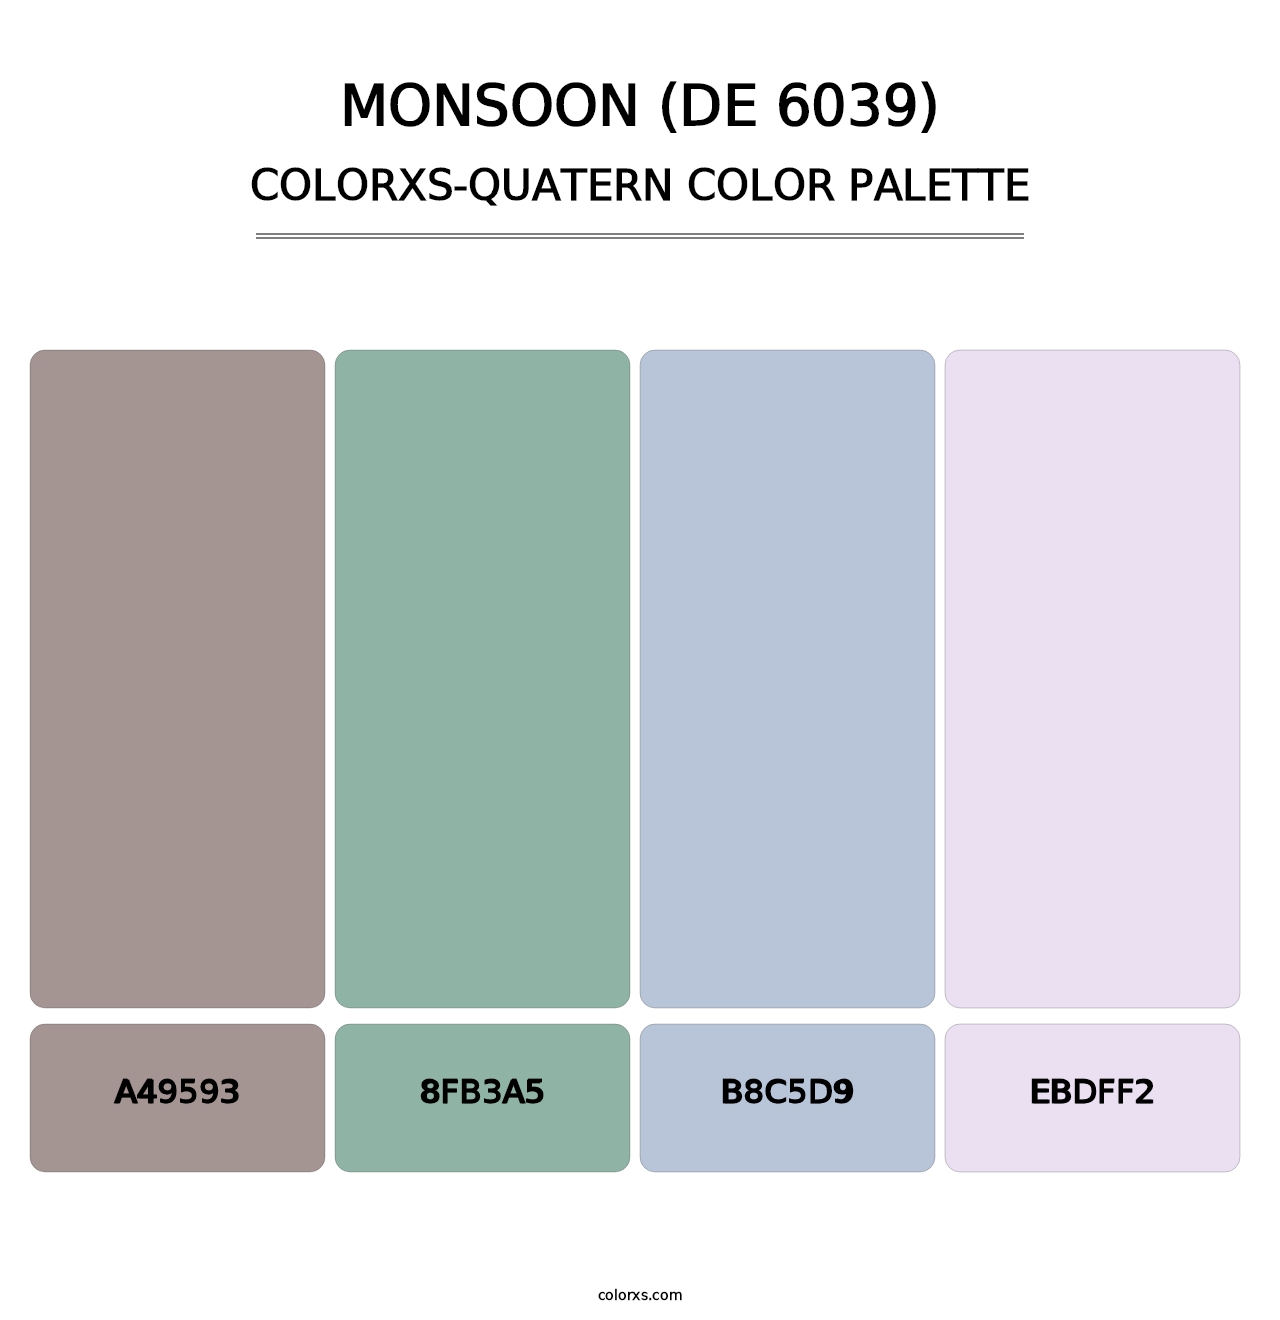 Monsoon (DE 6039) - Colorxs Quatern Palette